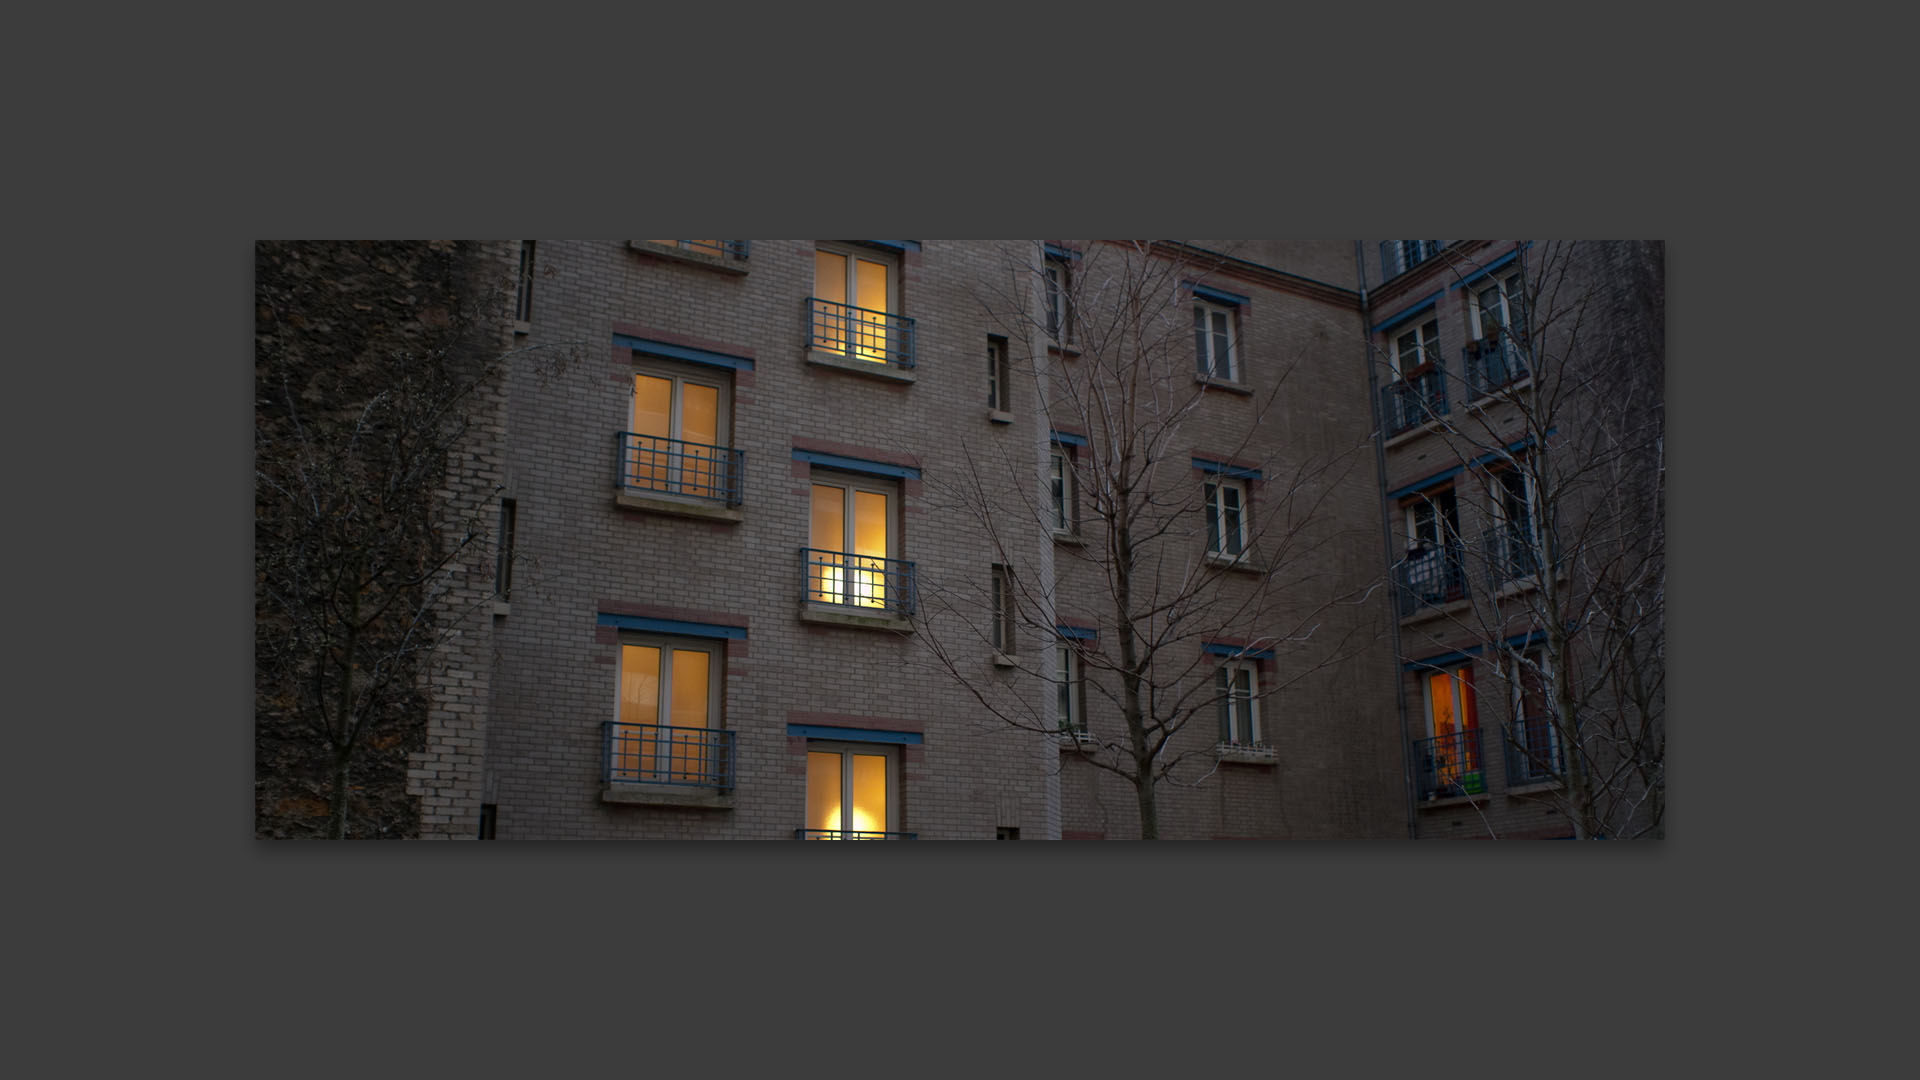 Fenêtres sur cour, rue Bobillot, à Paris.